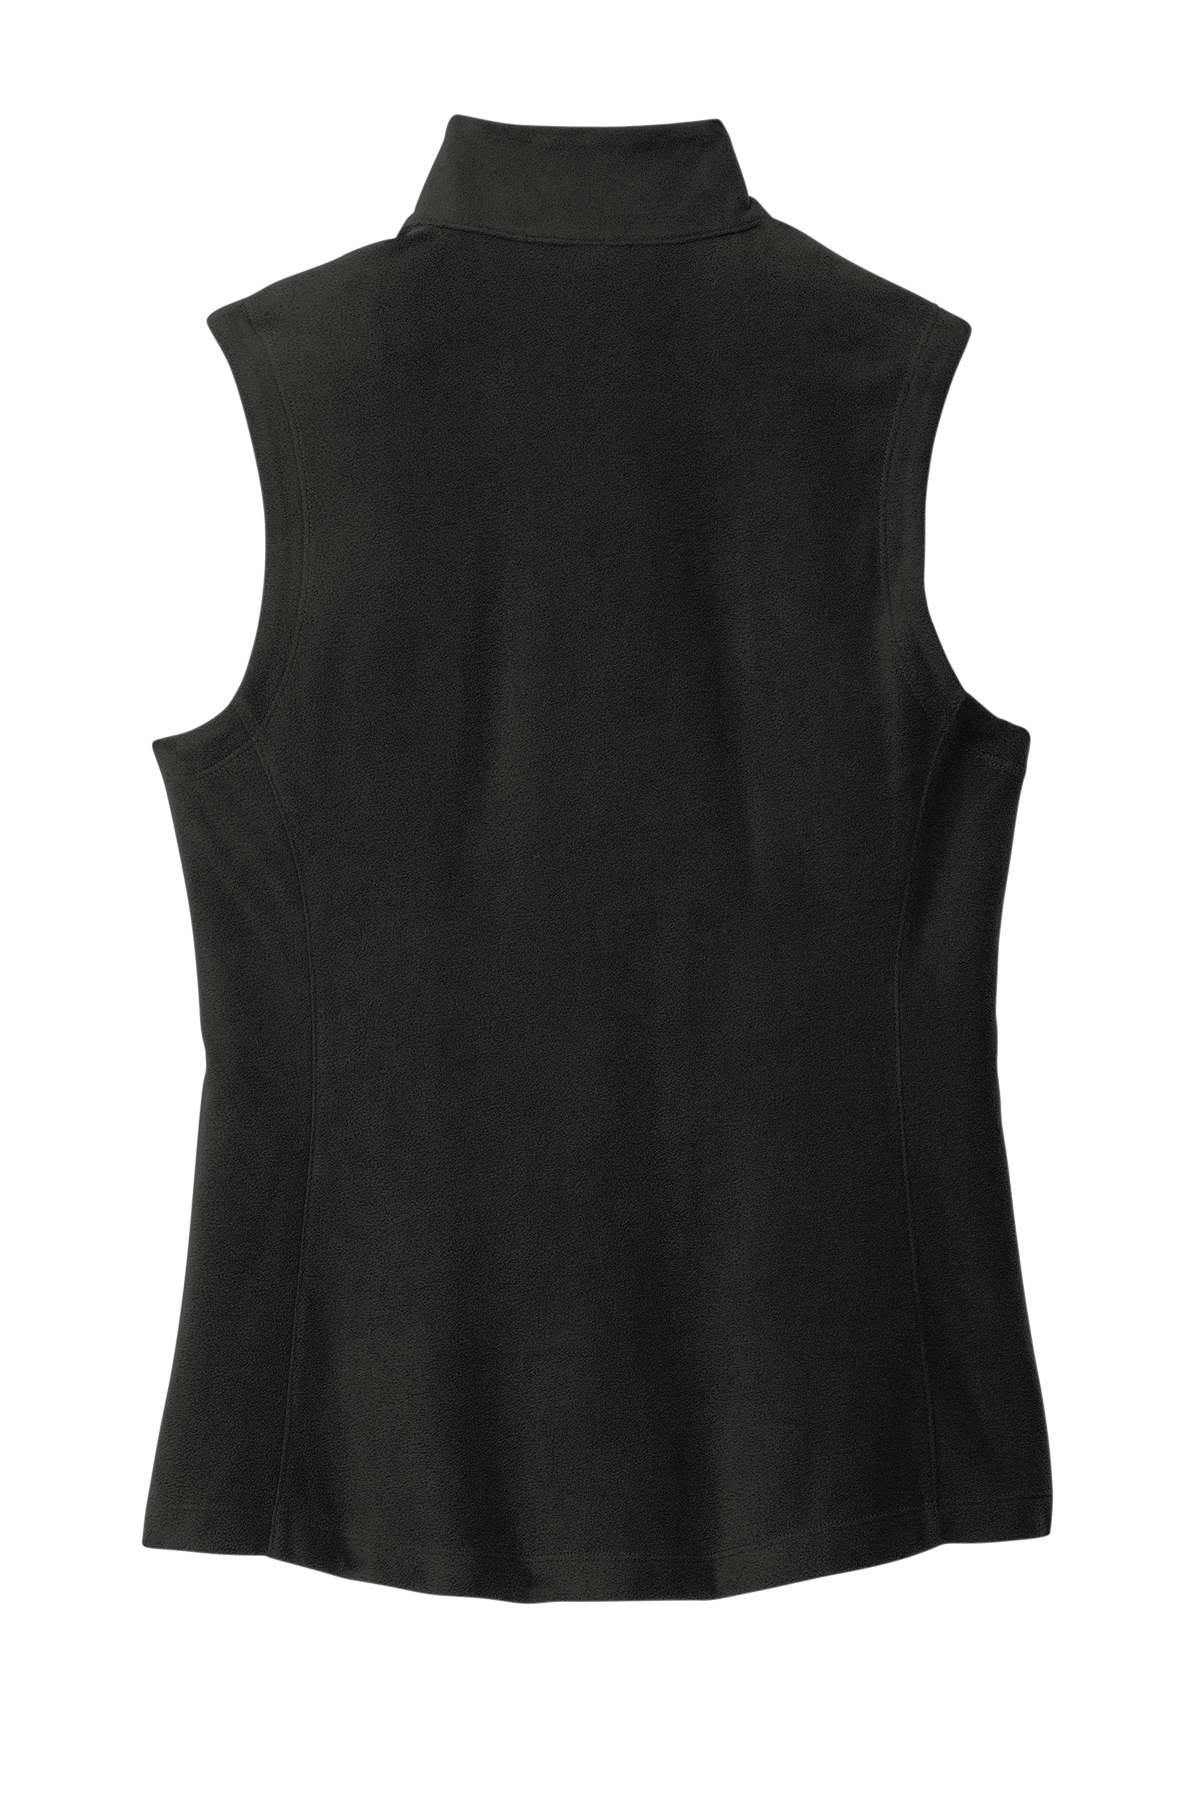 Port Authority Ladies Accord Microfleece Vest | Product | SanMar